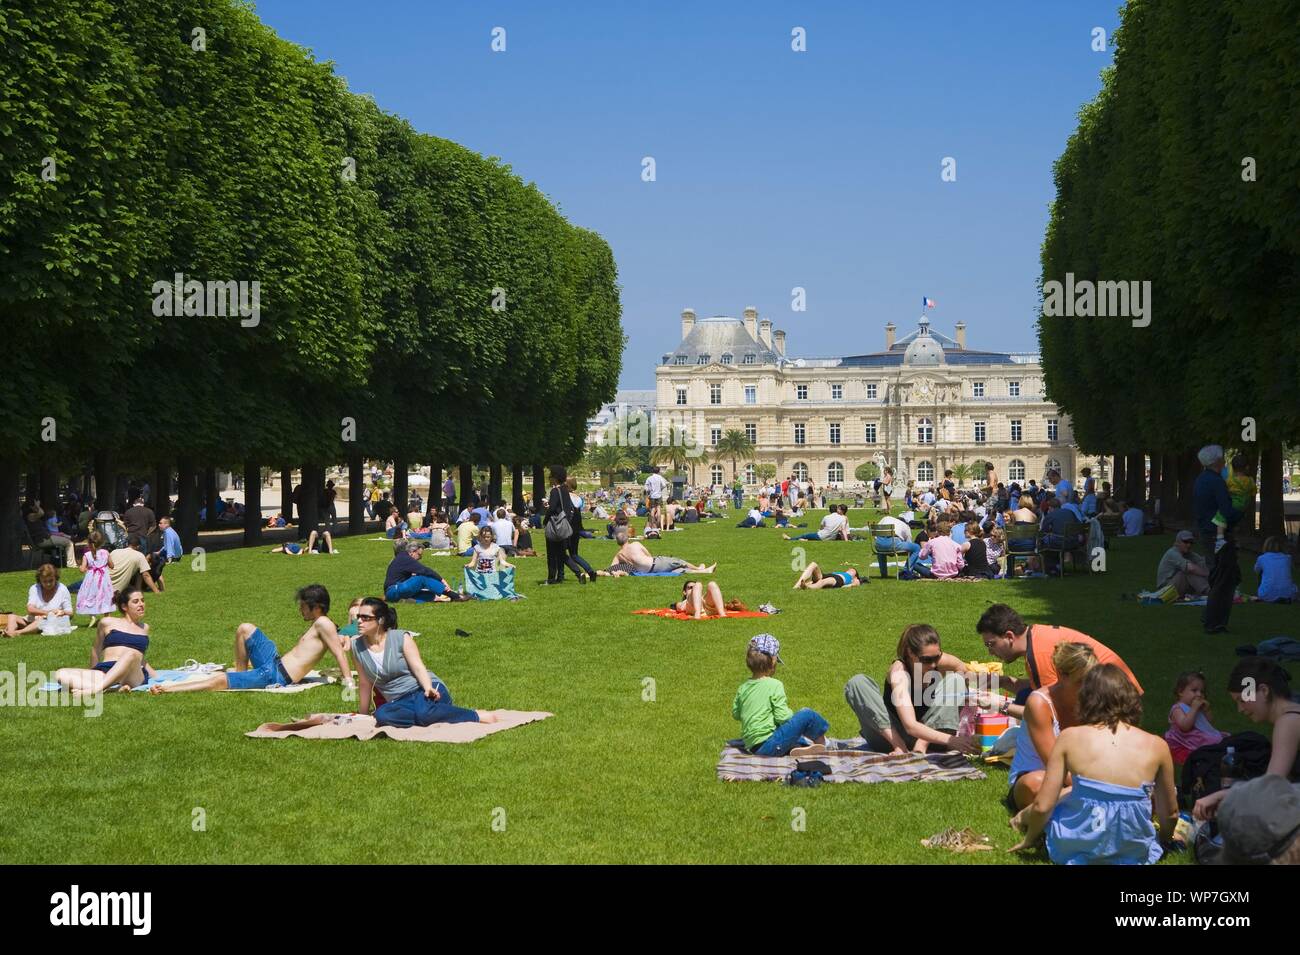 Der Jardin du Luxembourg ist ein früher königlicher, heute staatlicher Schlosspark im Pariser Quartier Latin mit einer Fläche von 26 Hektar. Die Anlag Stock Photo